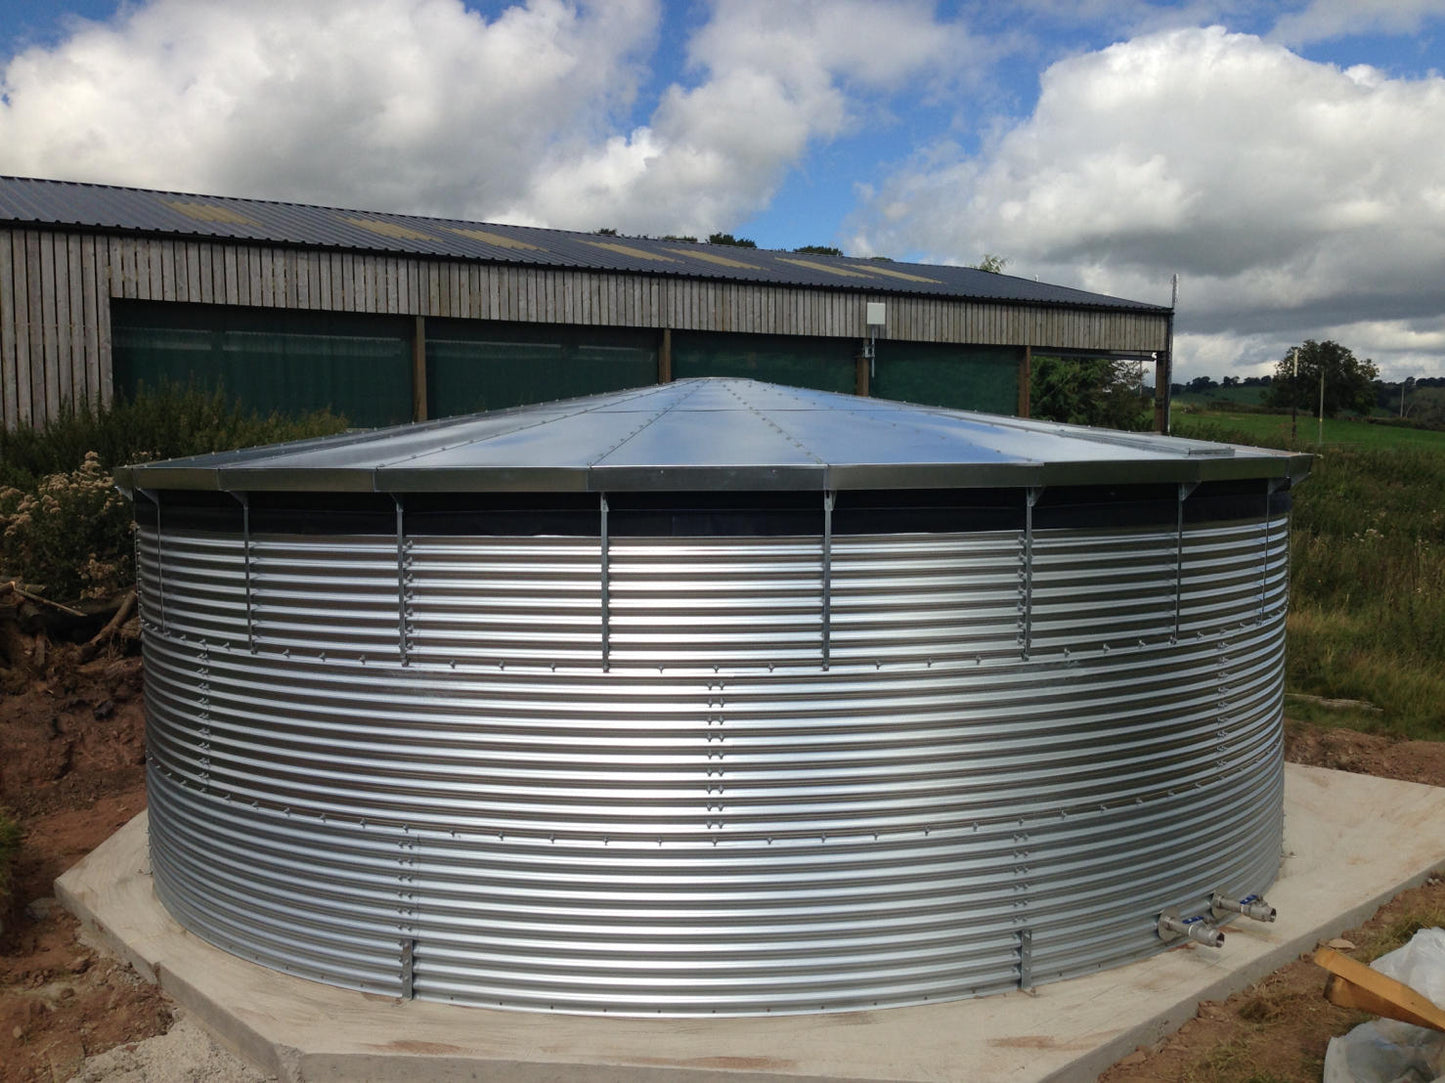 294,000 litre Galvanised Steel Water Tank